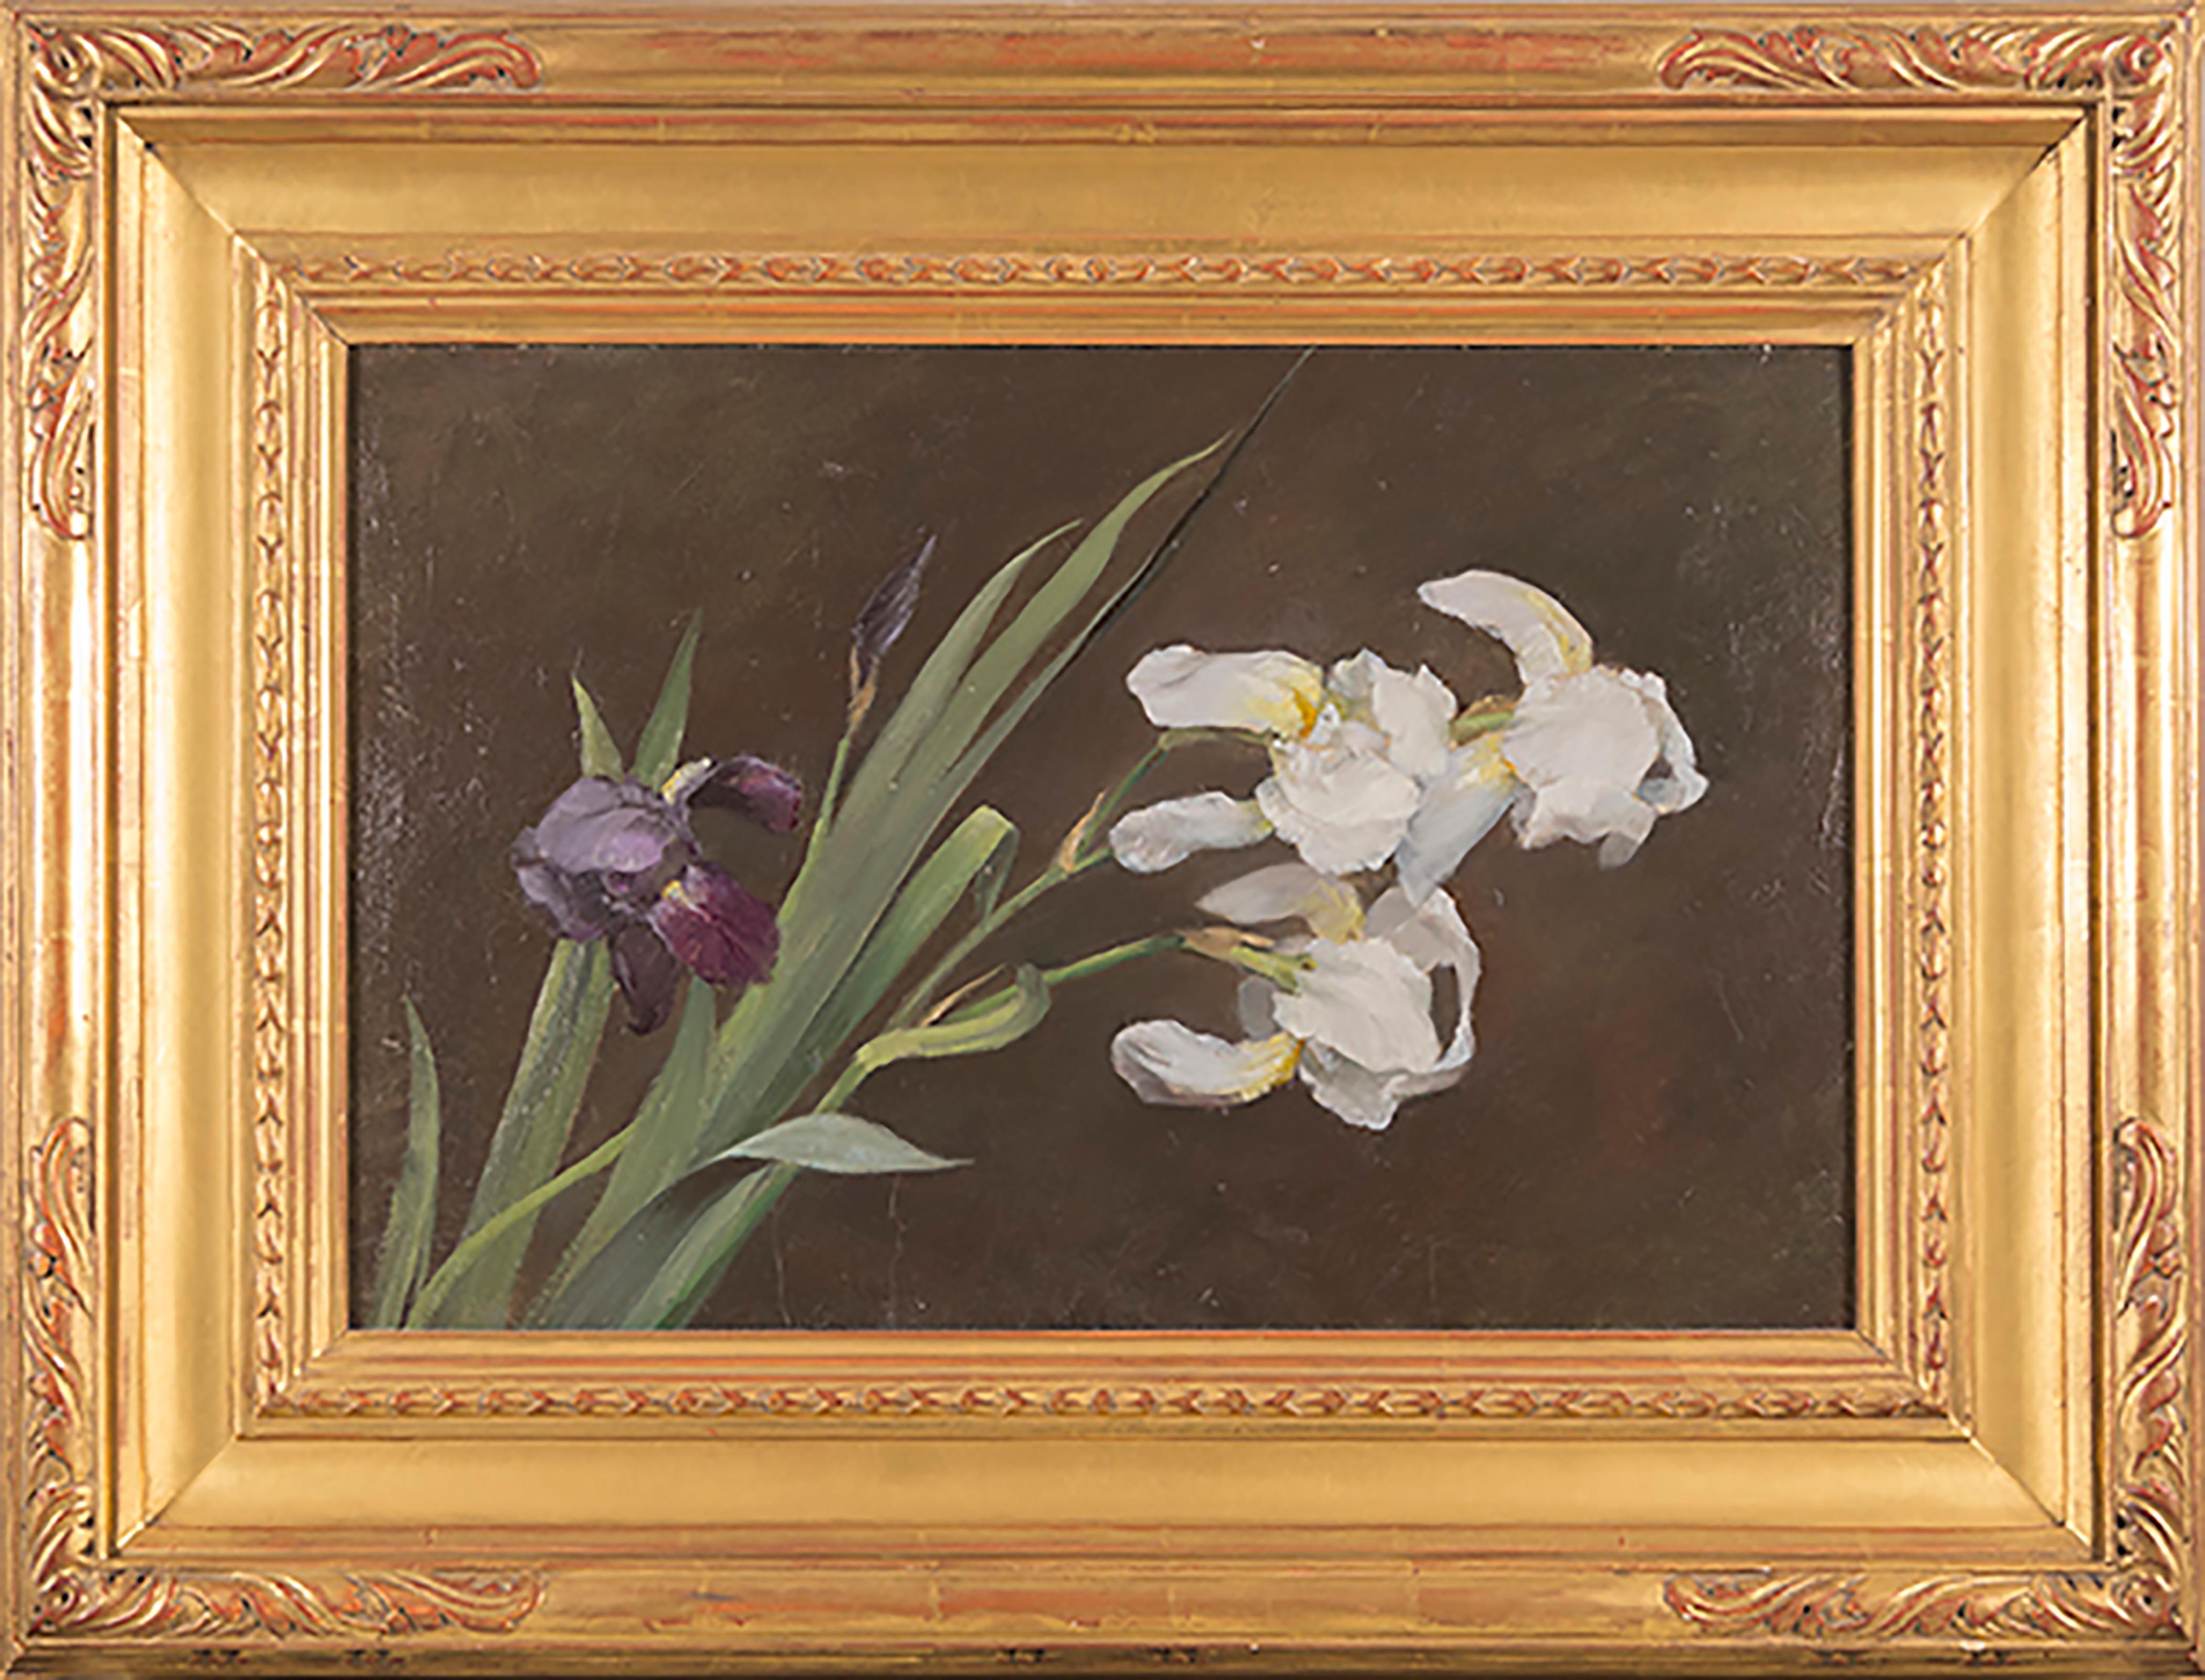 Iris violet et blanc - Naturalisme Painting par Fannie C. Burr